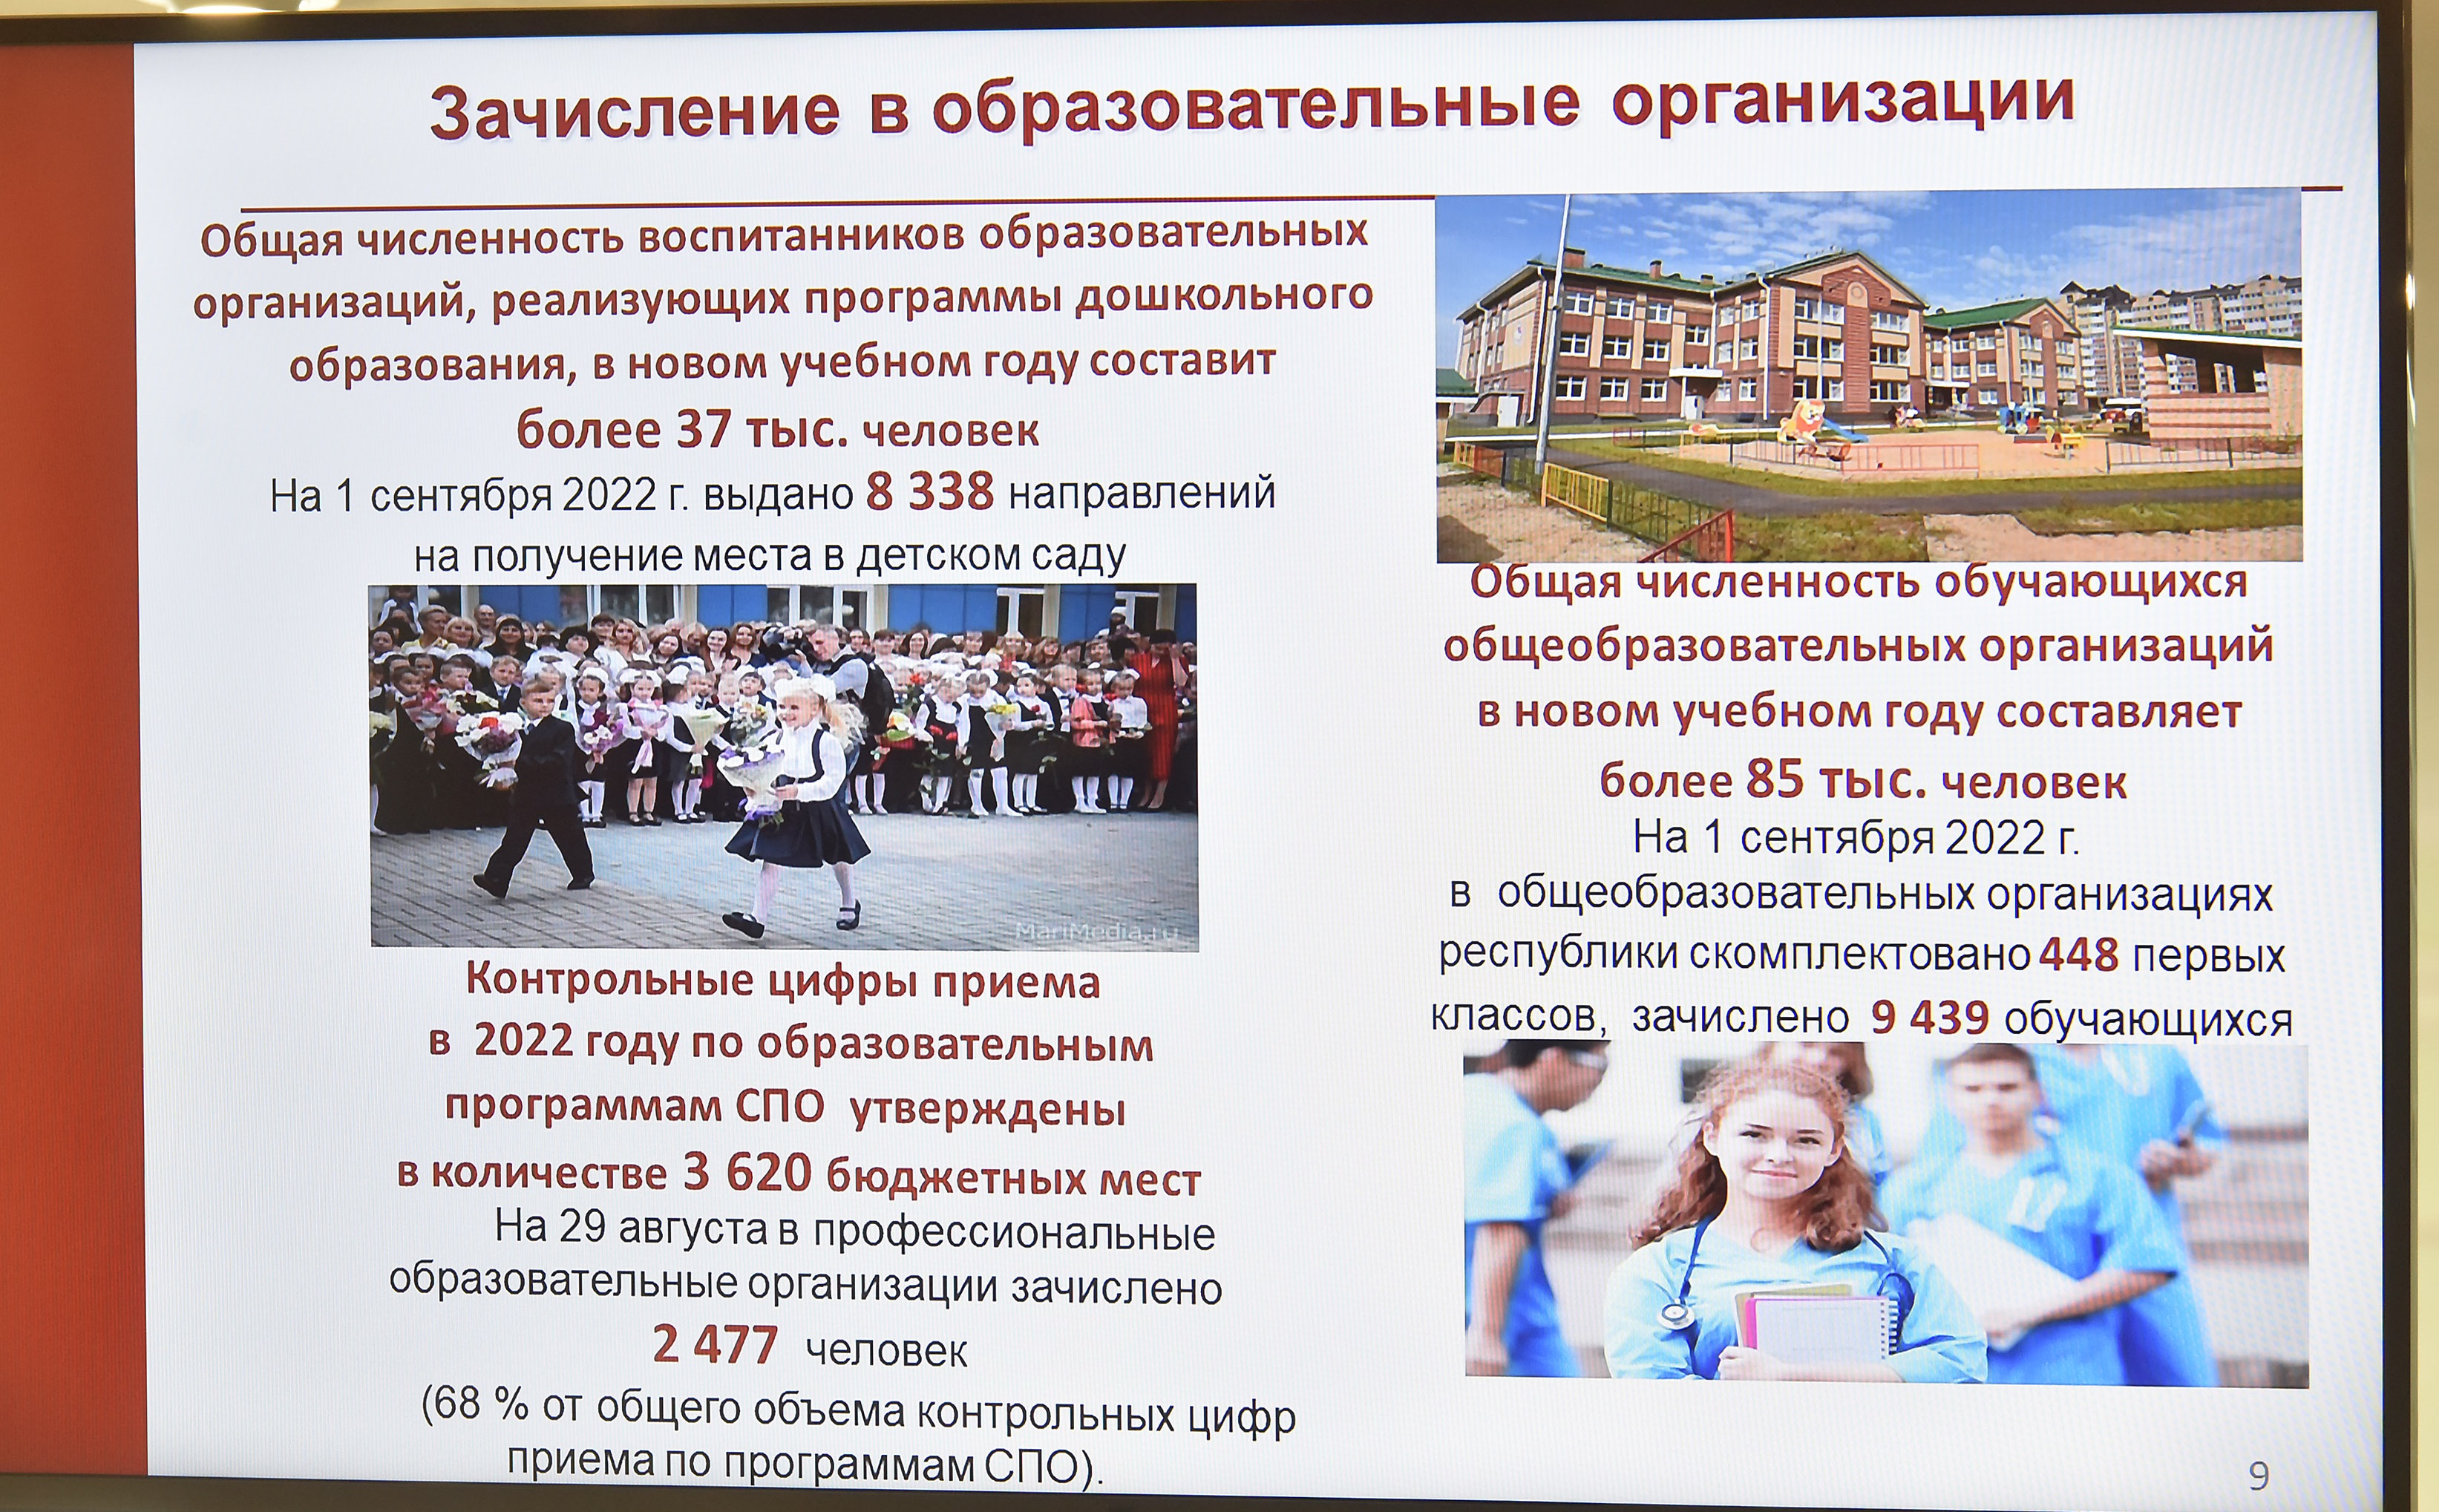  679 млн рублей направлено на подготовку образовательных организаций Марий Эл